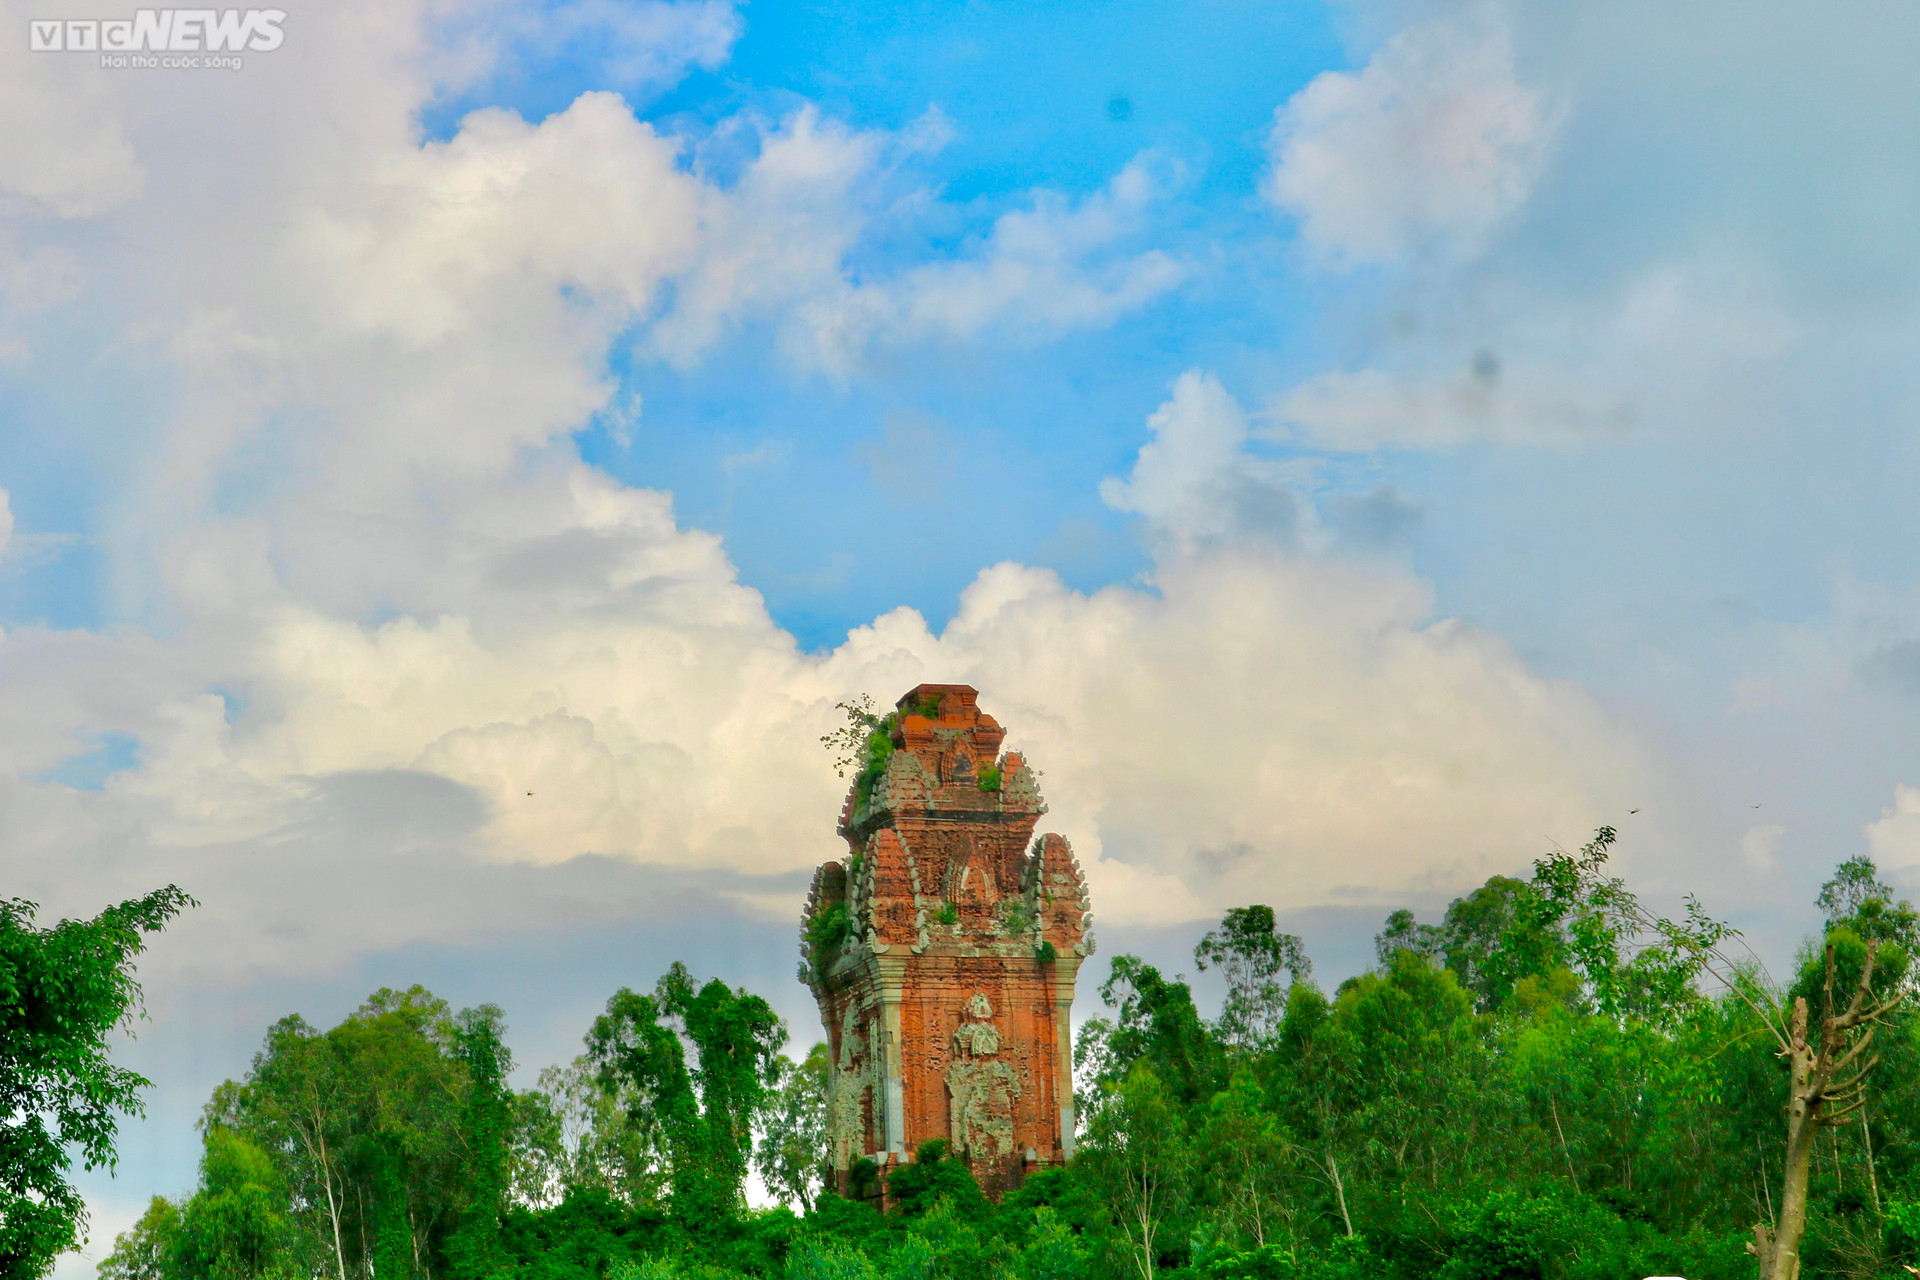 Tháp Chăm cổ ở Bình Định bị đập phá tường, thành nơi hút cỏ của nhiều đối tượng - 9